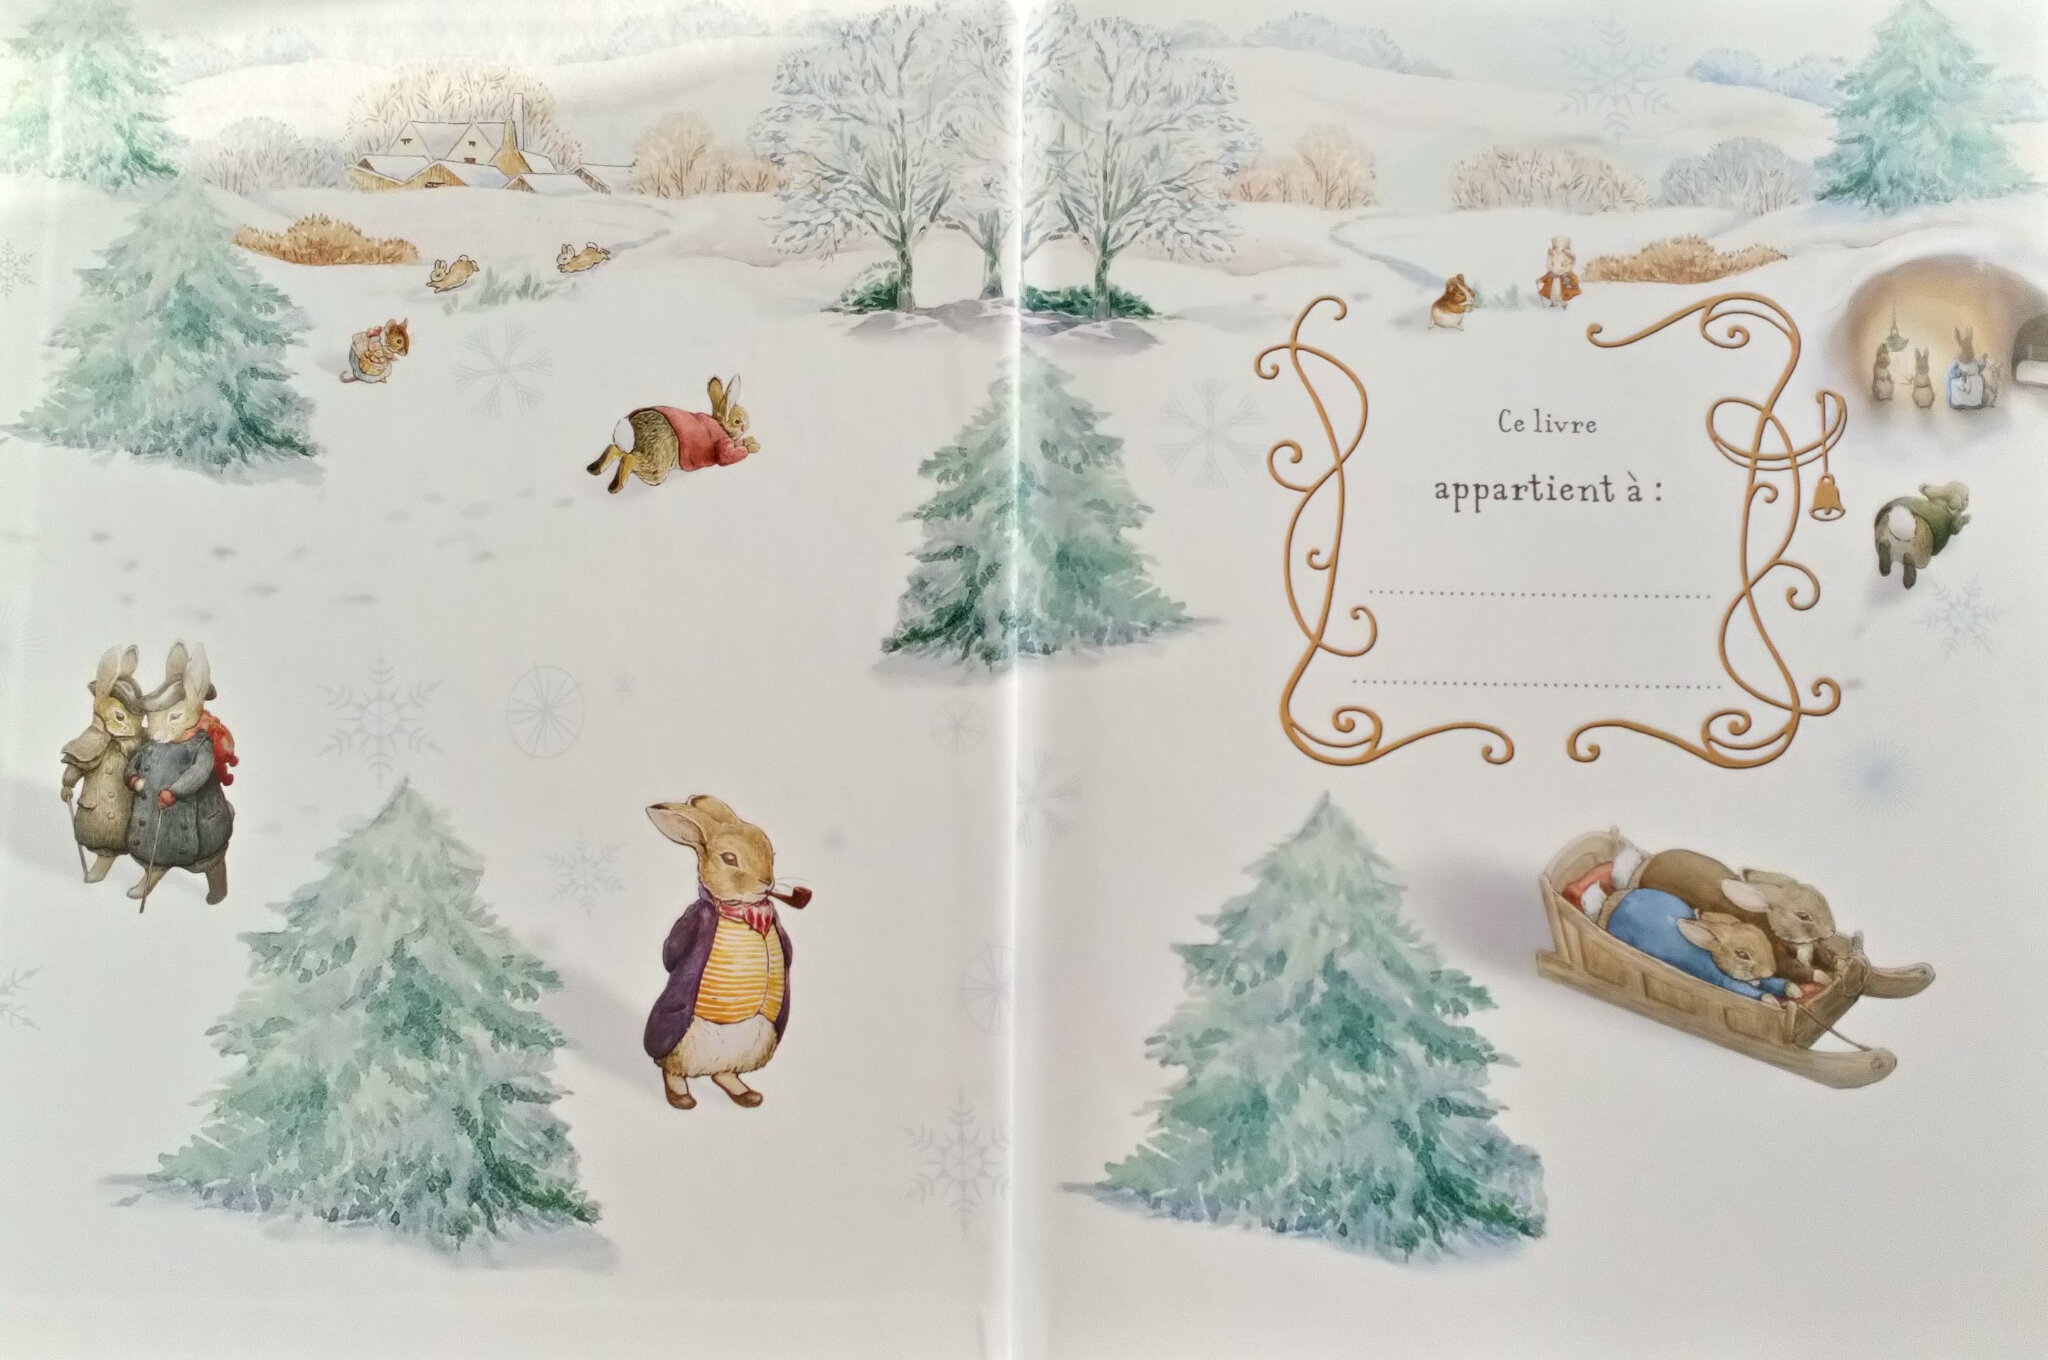 Livres illustrés Les cadeaux de Noël de Pierre Lapin, Beatrix Potter -  Albums